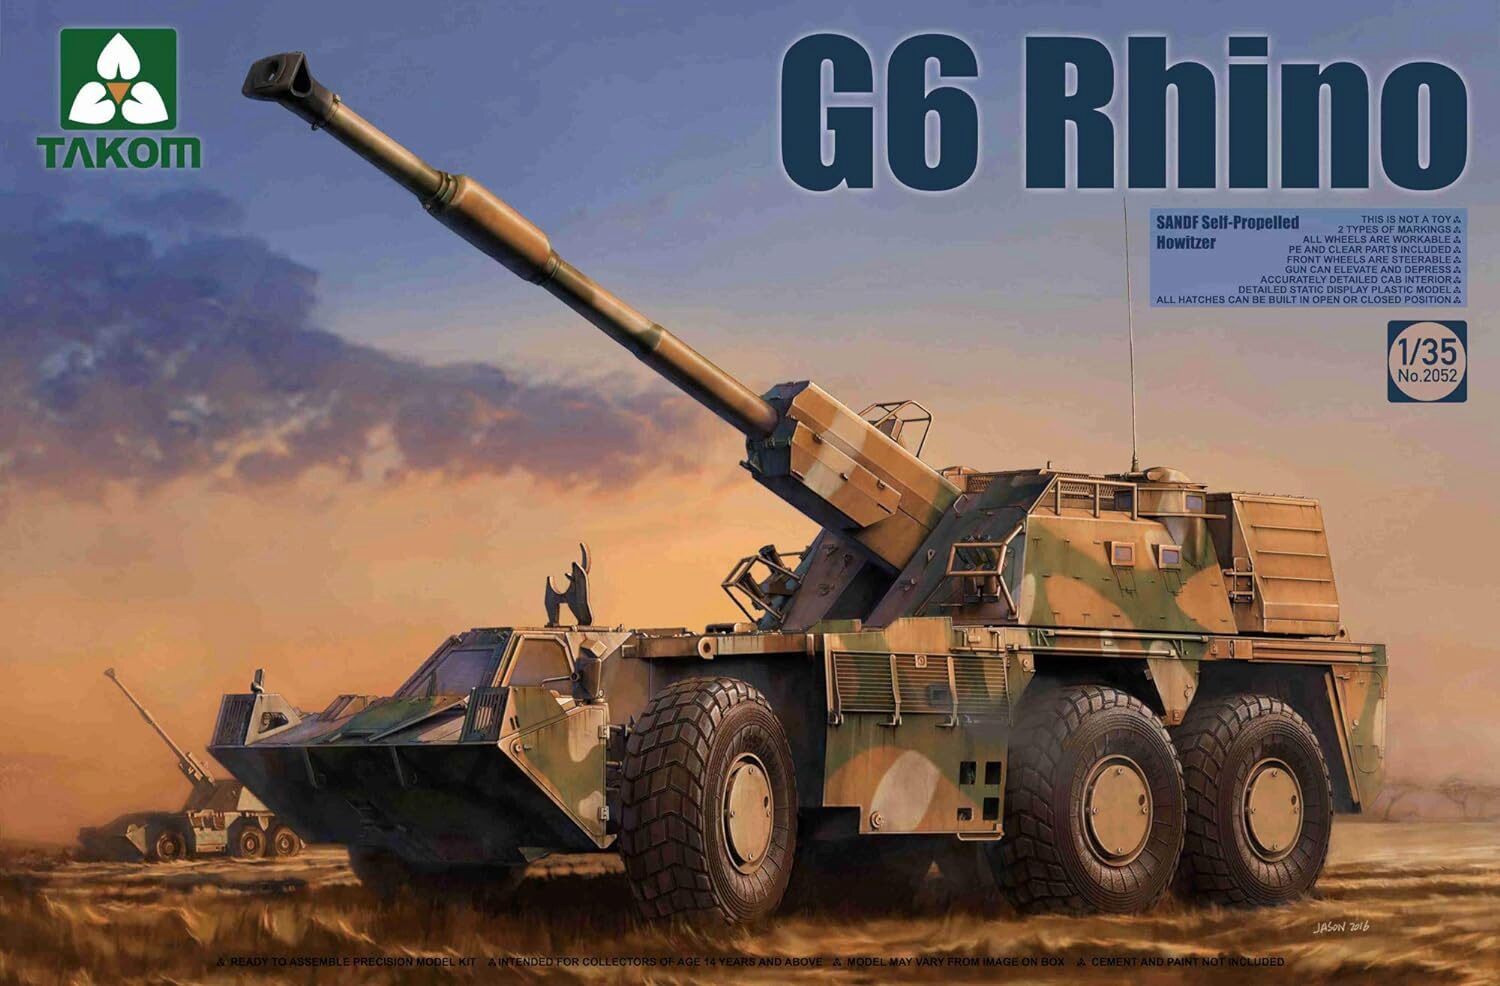 Takom TAK2052 SANDF Self-Propelled Howitzer G6 Rhino